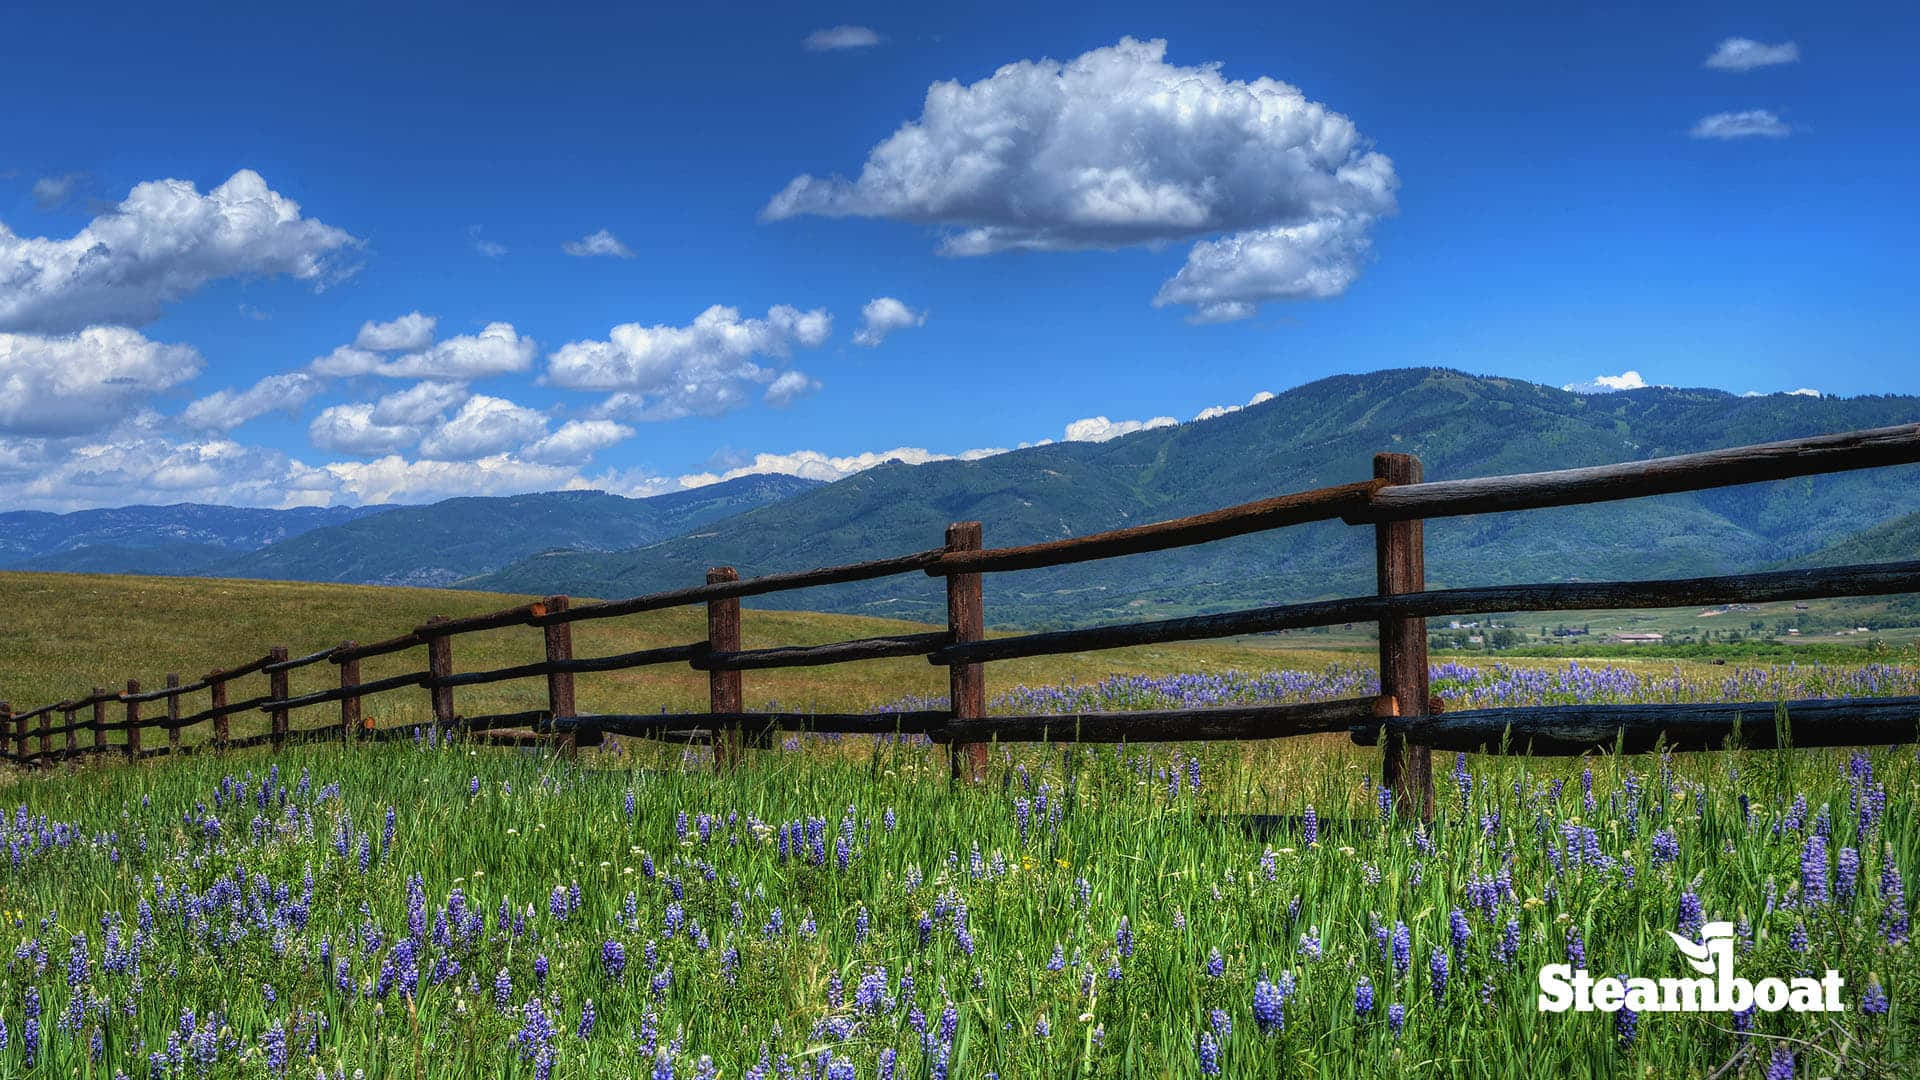 Tag et snap af Steamboat Springs Colorado denne forår med dette zoom baggrundsbillede.